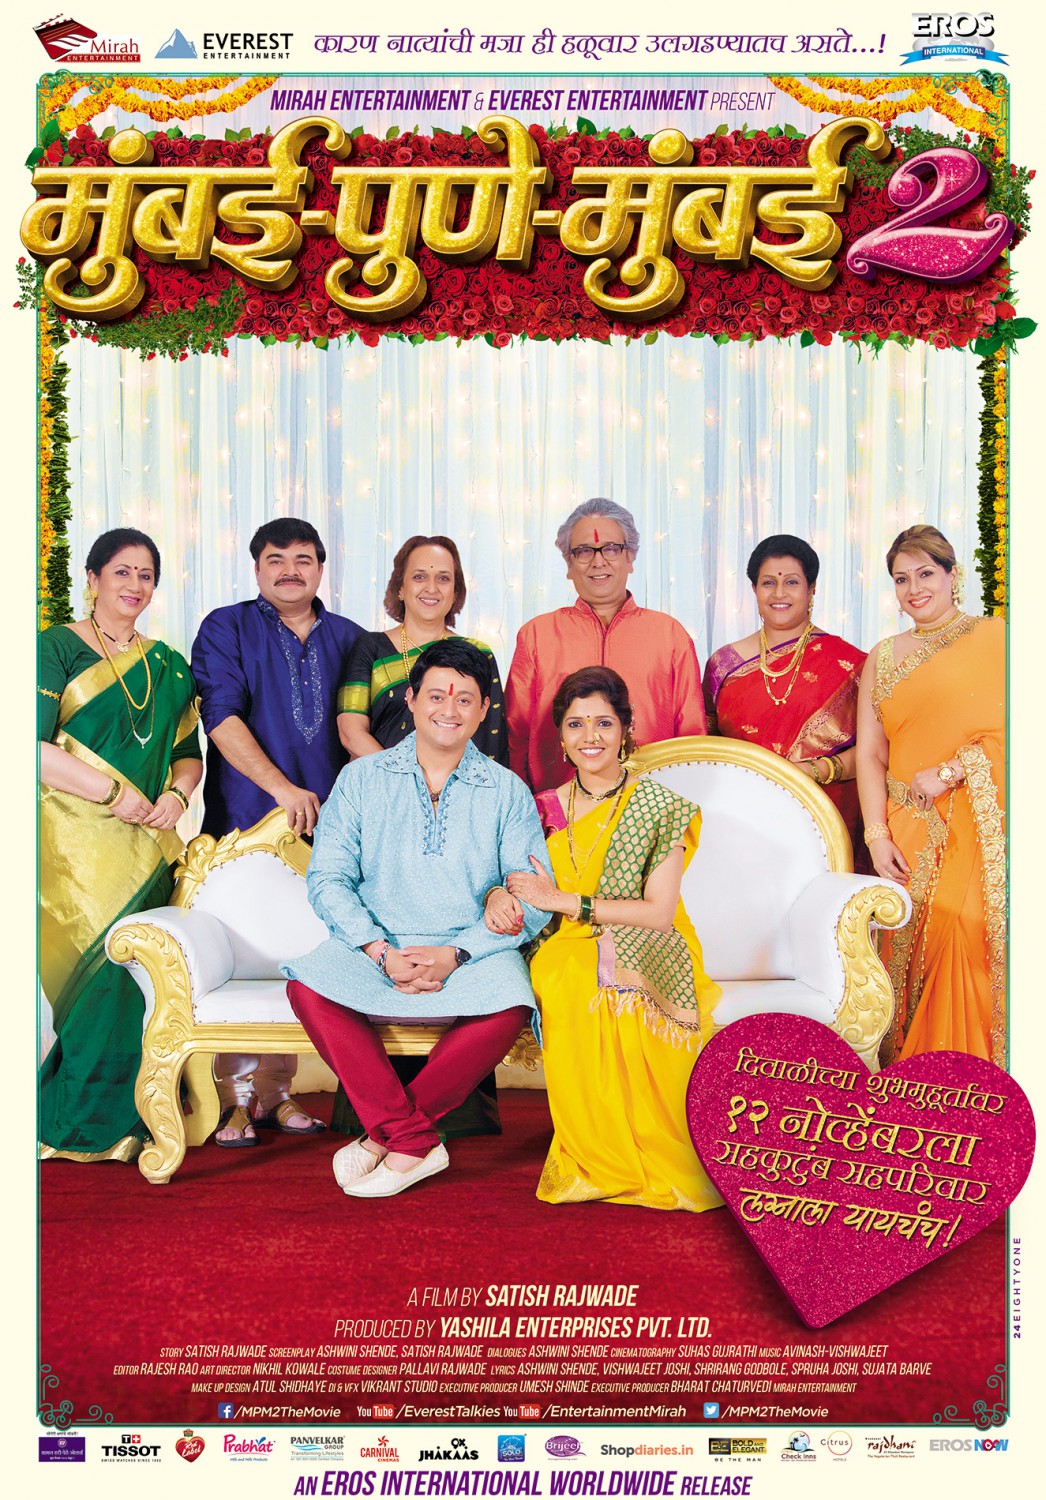 Extra Large Movie Poster Image for Mumbai Pune Mumbai 2 (#6 of 6)